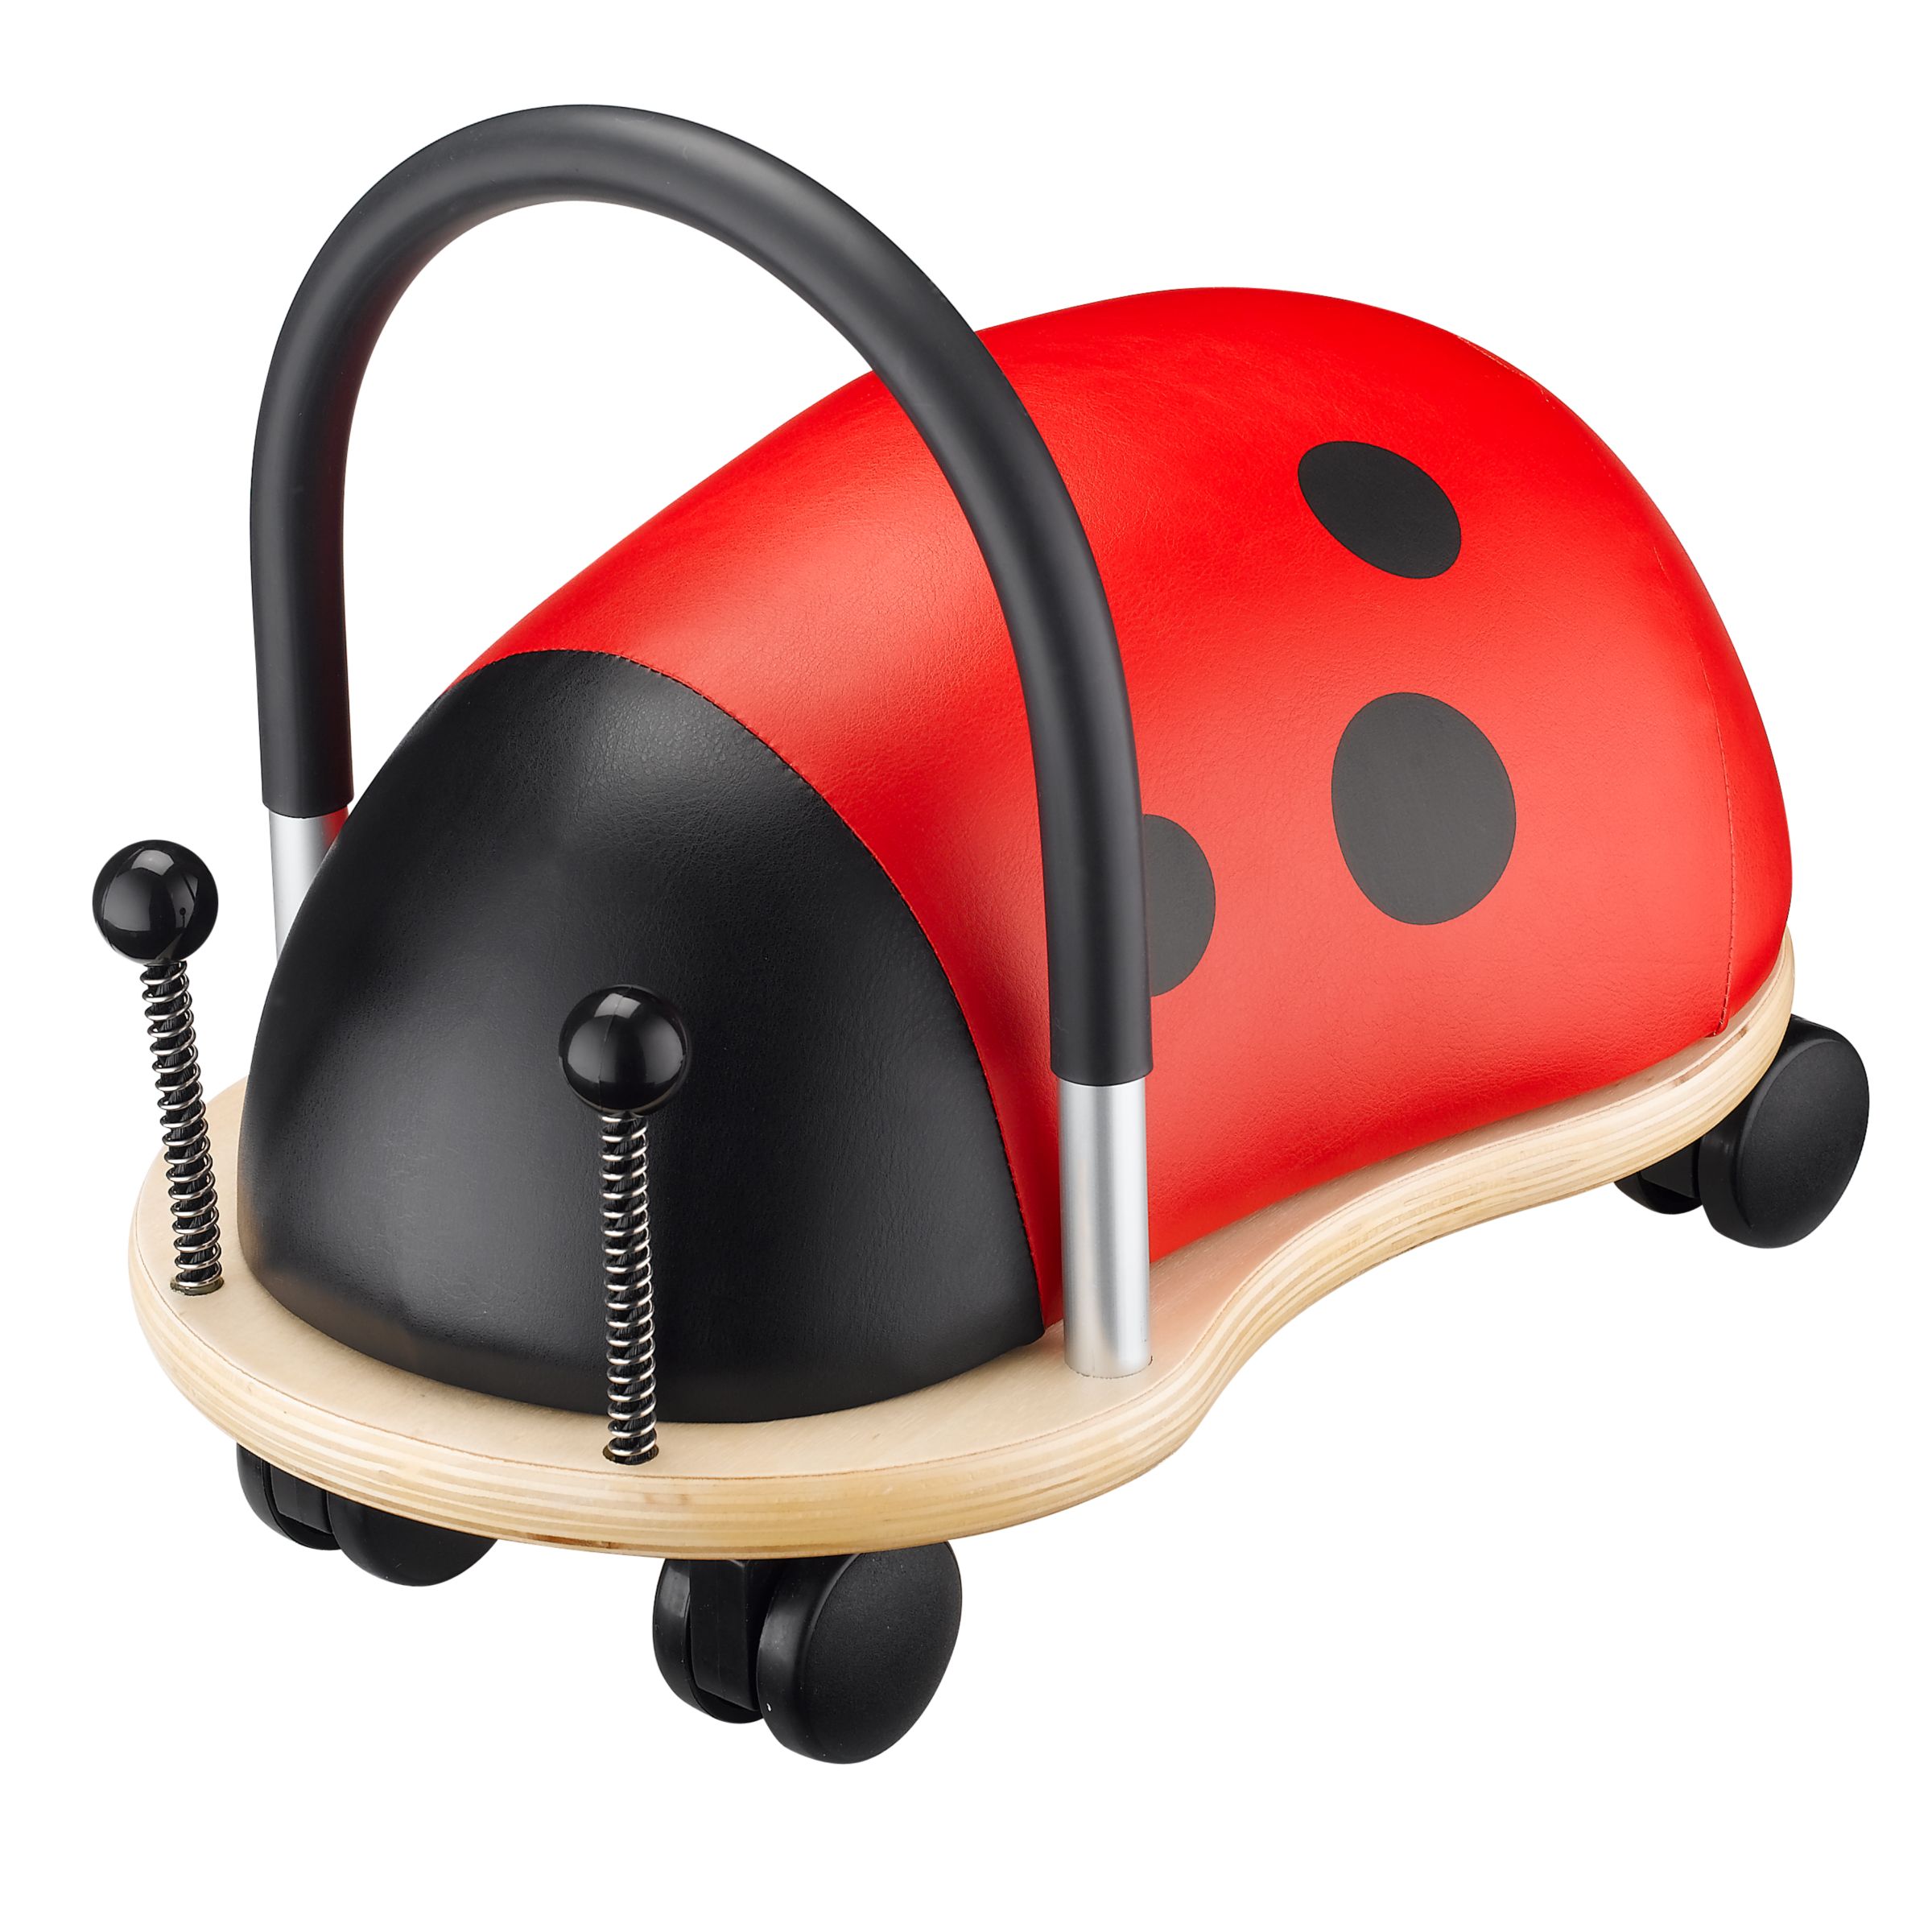 WheelyBug Ladybird Ride-on Toy